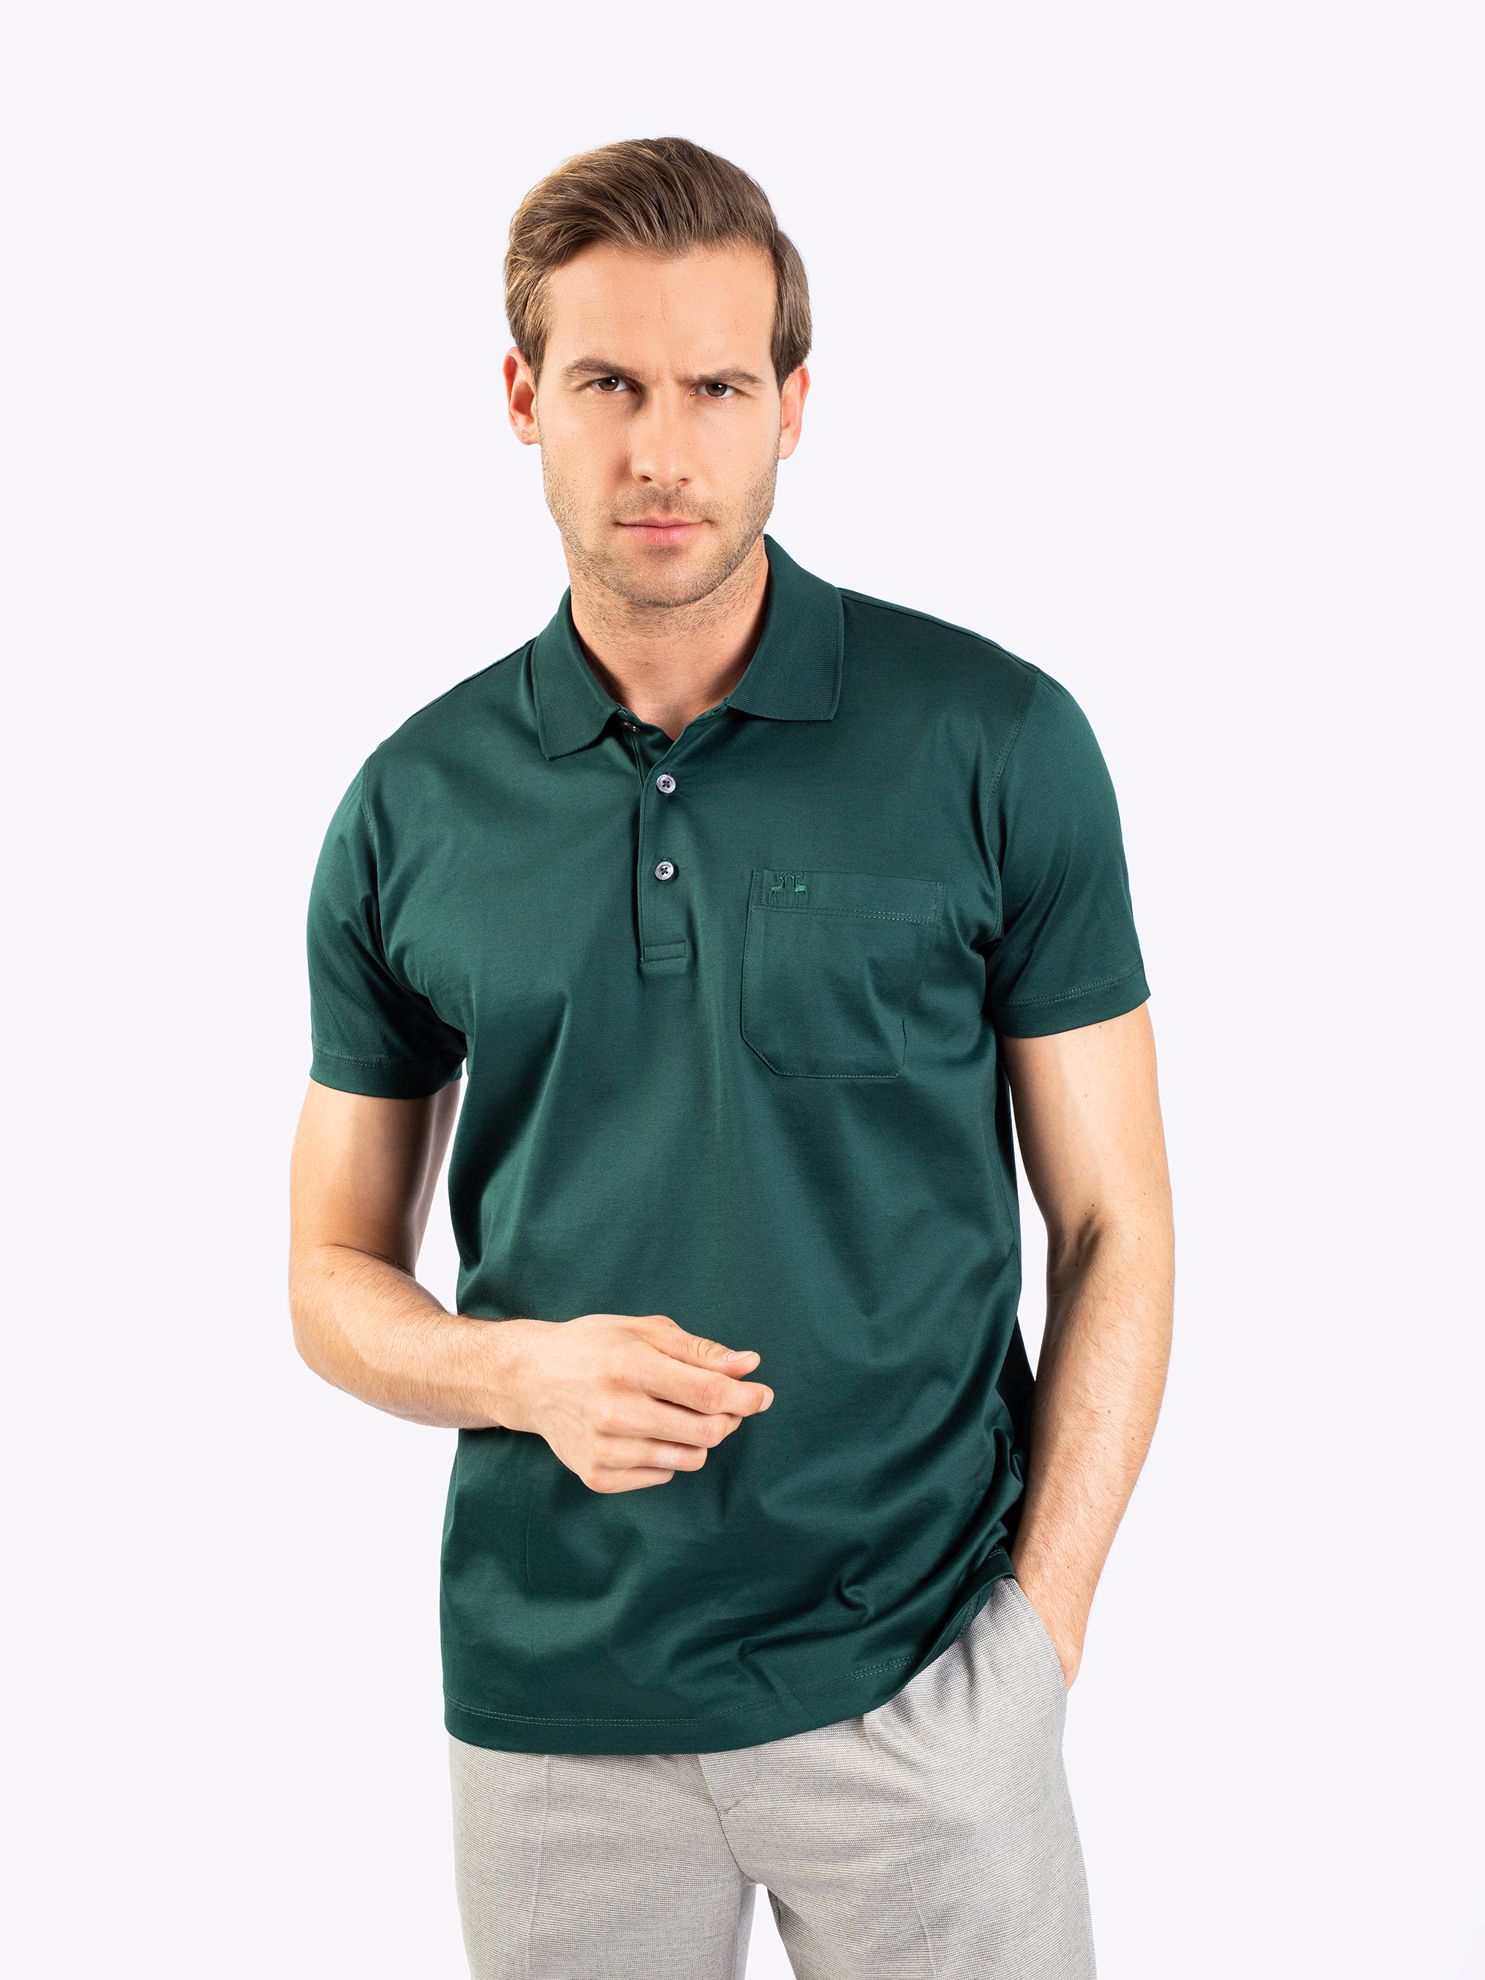 Karaca Erkek Büyük Beden Polo Yaka Tişört-Koyu Yeşil. ürün görseli